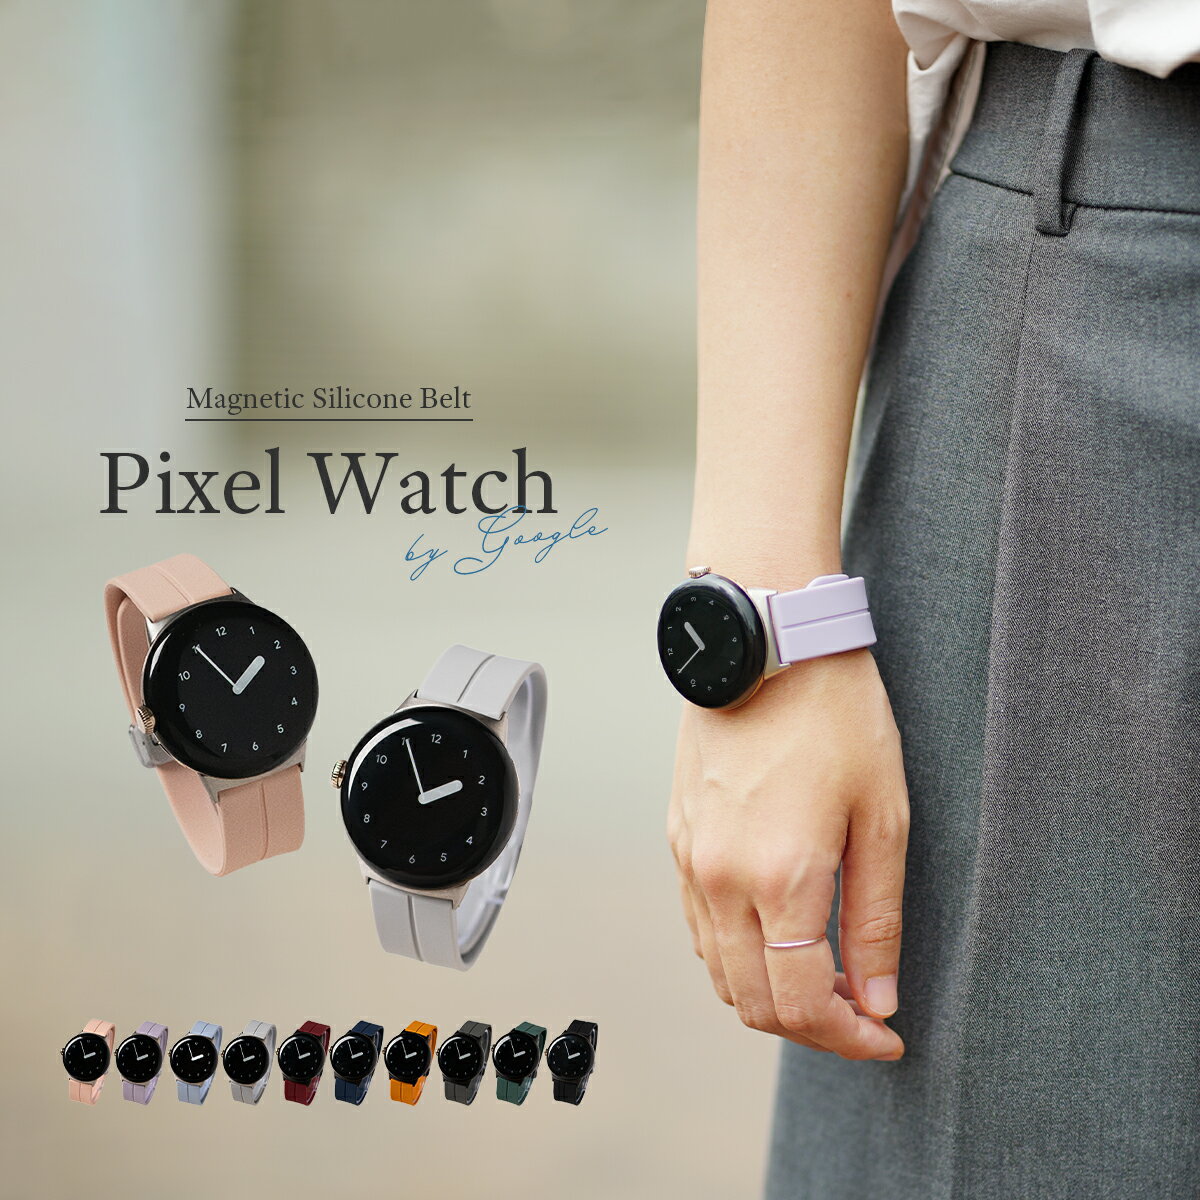 【最大30%OFFクーポン】 Google Pixel Watch バンド ピクセルウォッチ pixelwatch バンド Pixel Watch ケース Google Pixel Watch ベルト Google Pixel Watch マグネット シリコン バンド 韓国 レディース 女性 おすすめ 人気 プレゼント ギフト グーグル